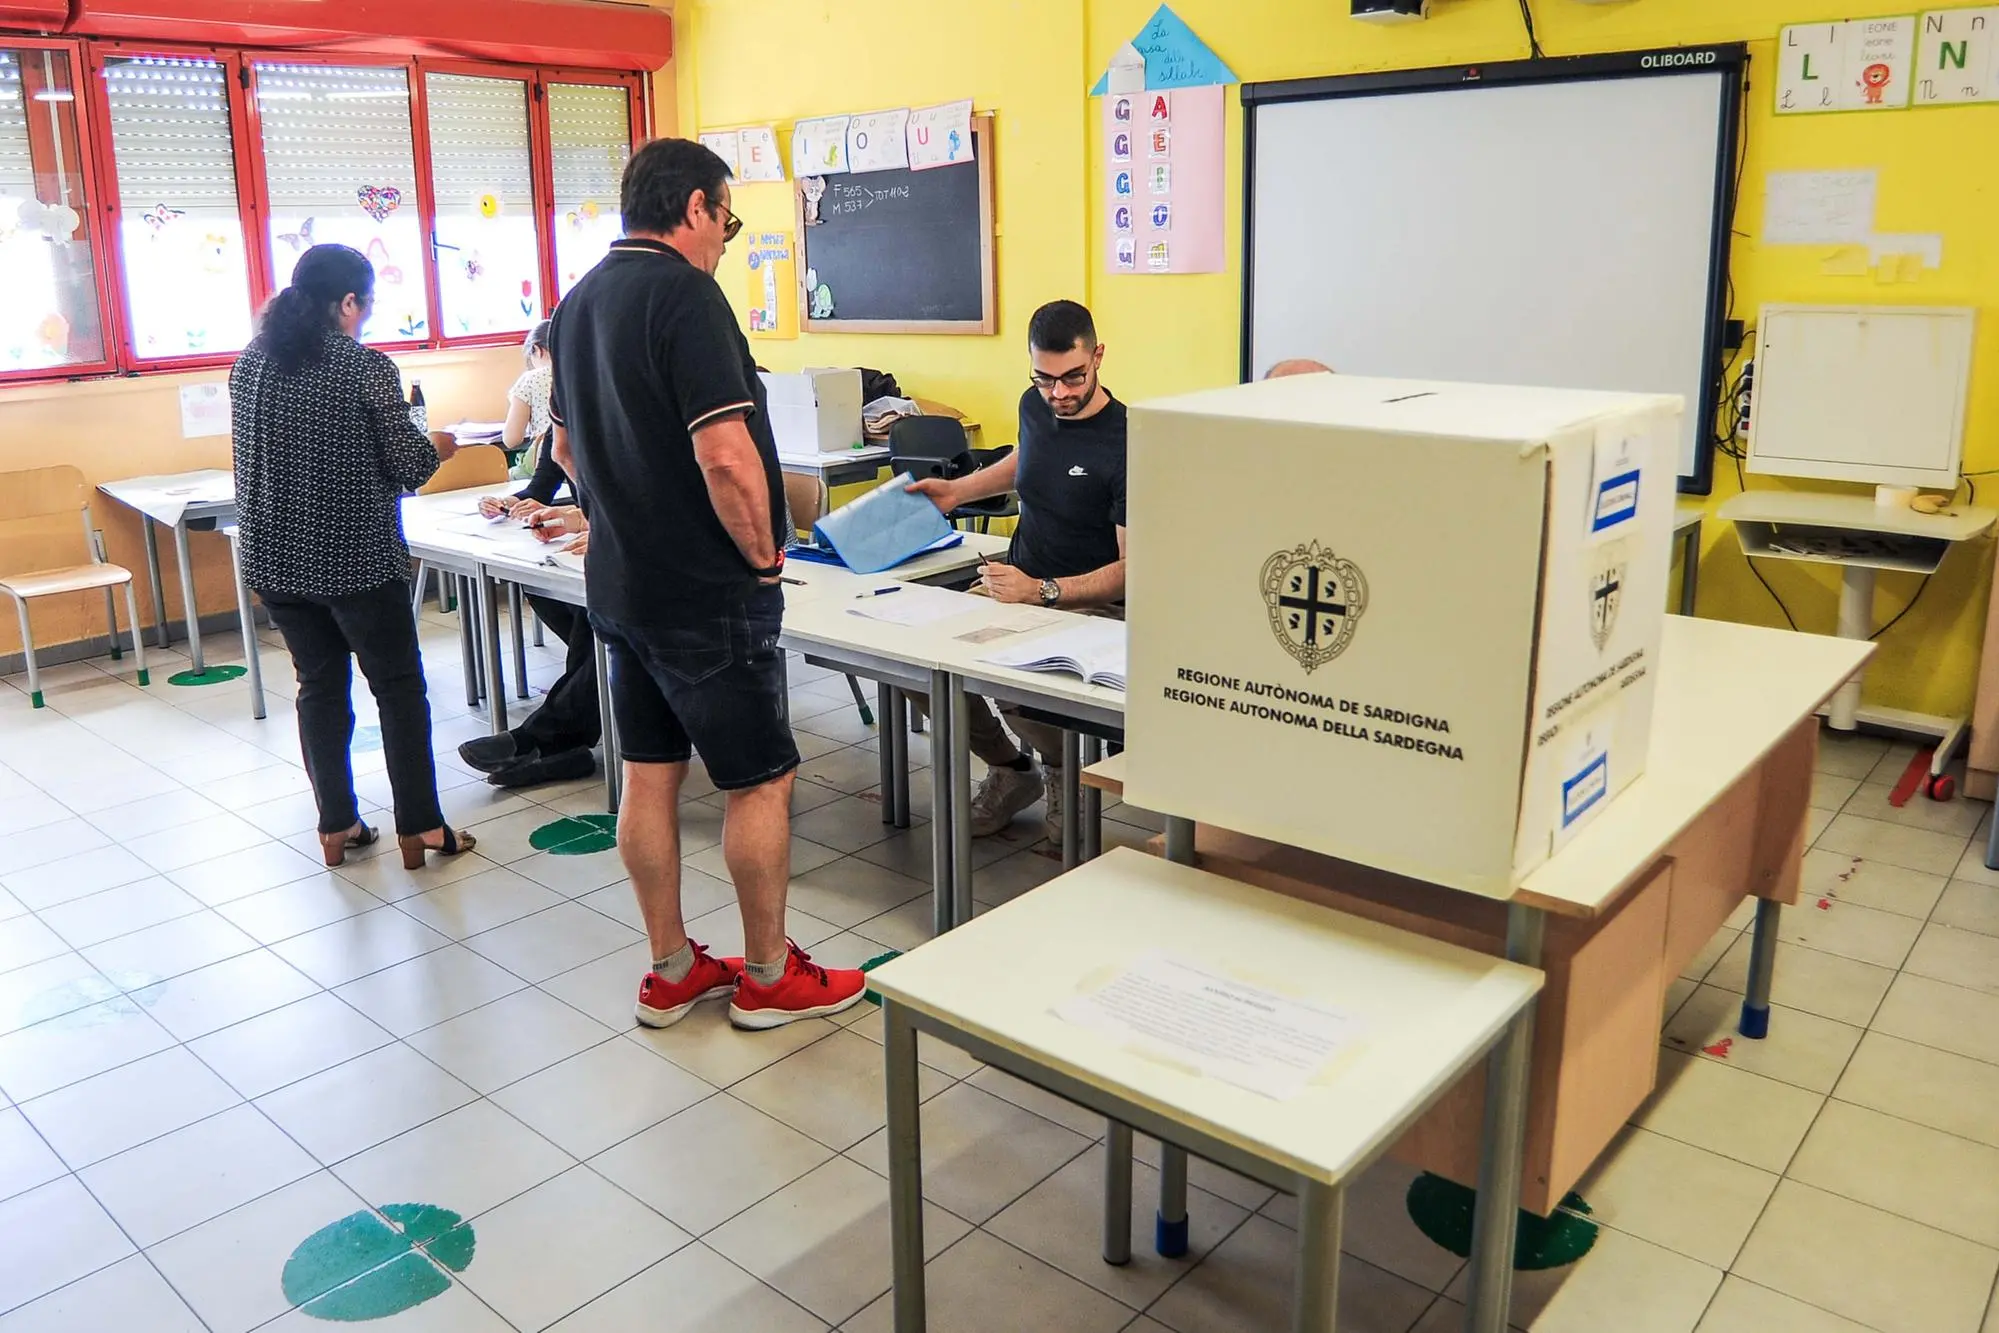 Elettori al voto in un seggio ad Assemini (foto Cucca)